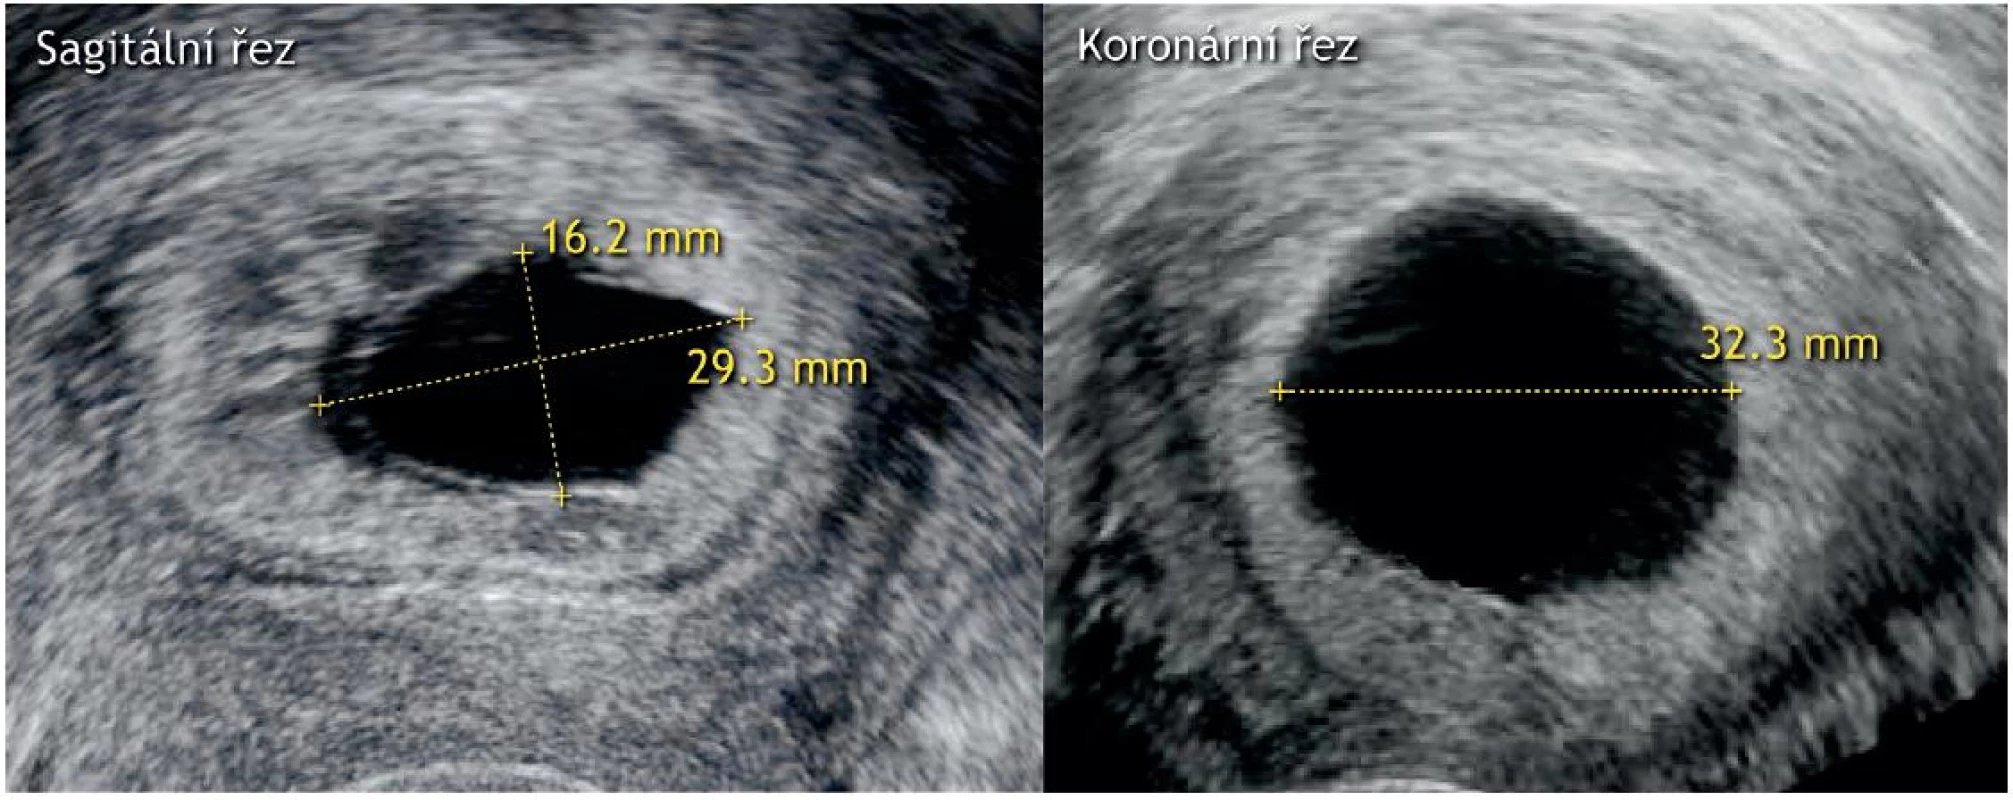 Průkaz neprosperující itrauterinní gravidity (průměrná velikost gestačního váčku ≥ 25 mm bez prokazatelného embrya)
Ultrazvukové zobrazení gestačního váčku bez embrya se srdeční akcí a v tomto případě i bez sekundárního žloutkového váčku o průměrné velikosti 25,9 mm (v sagitálním řezu: kraniokaudální rozměr 16,2 mm a anteroposteriorní 29,3 mm, v koronárním řezu: laterolaterální rozměr 32,3 mm).